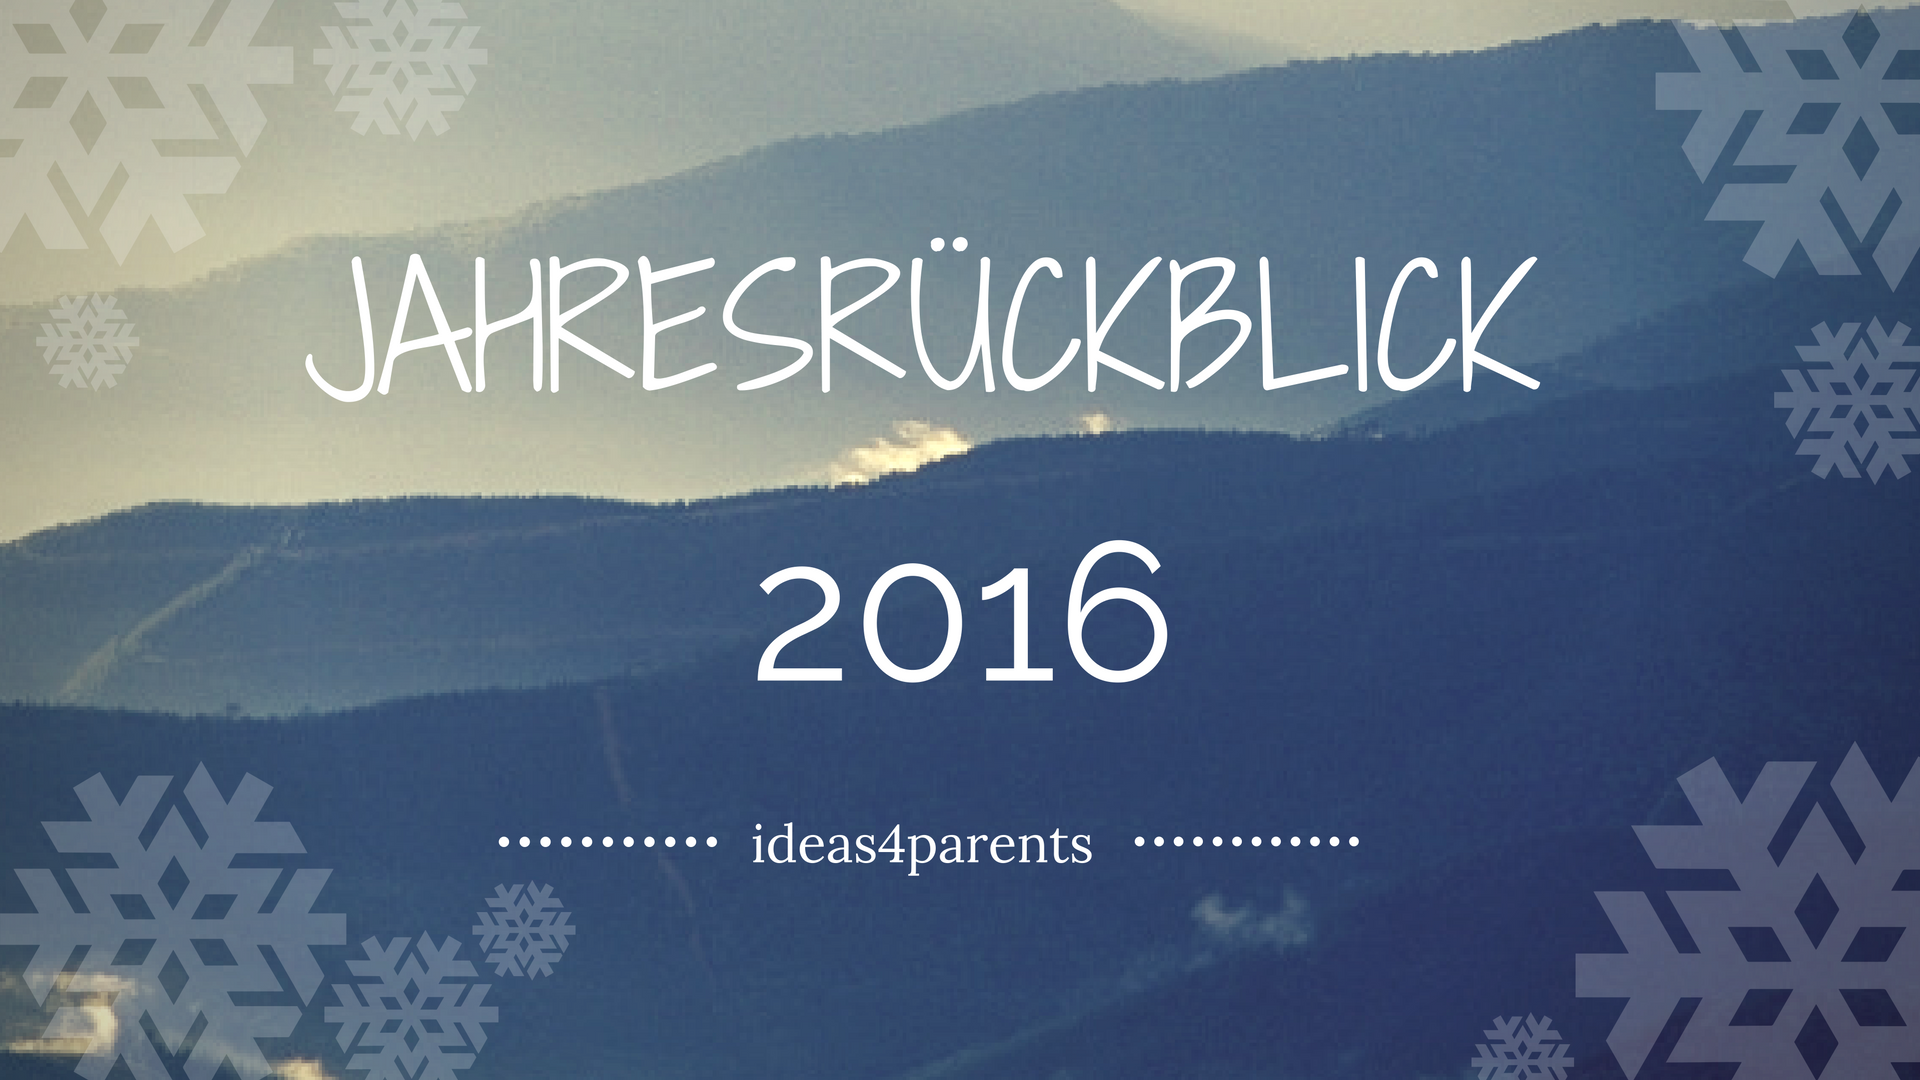 ideas4parents-jahresrueckblick-2016